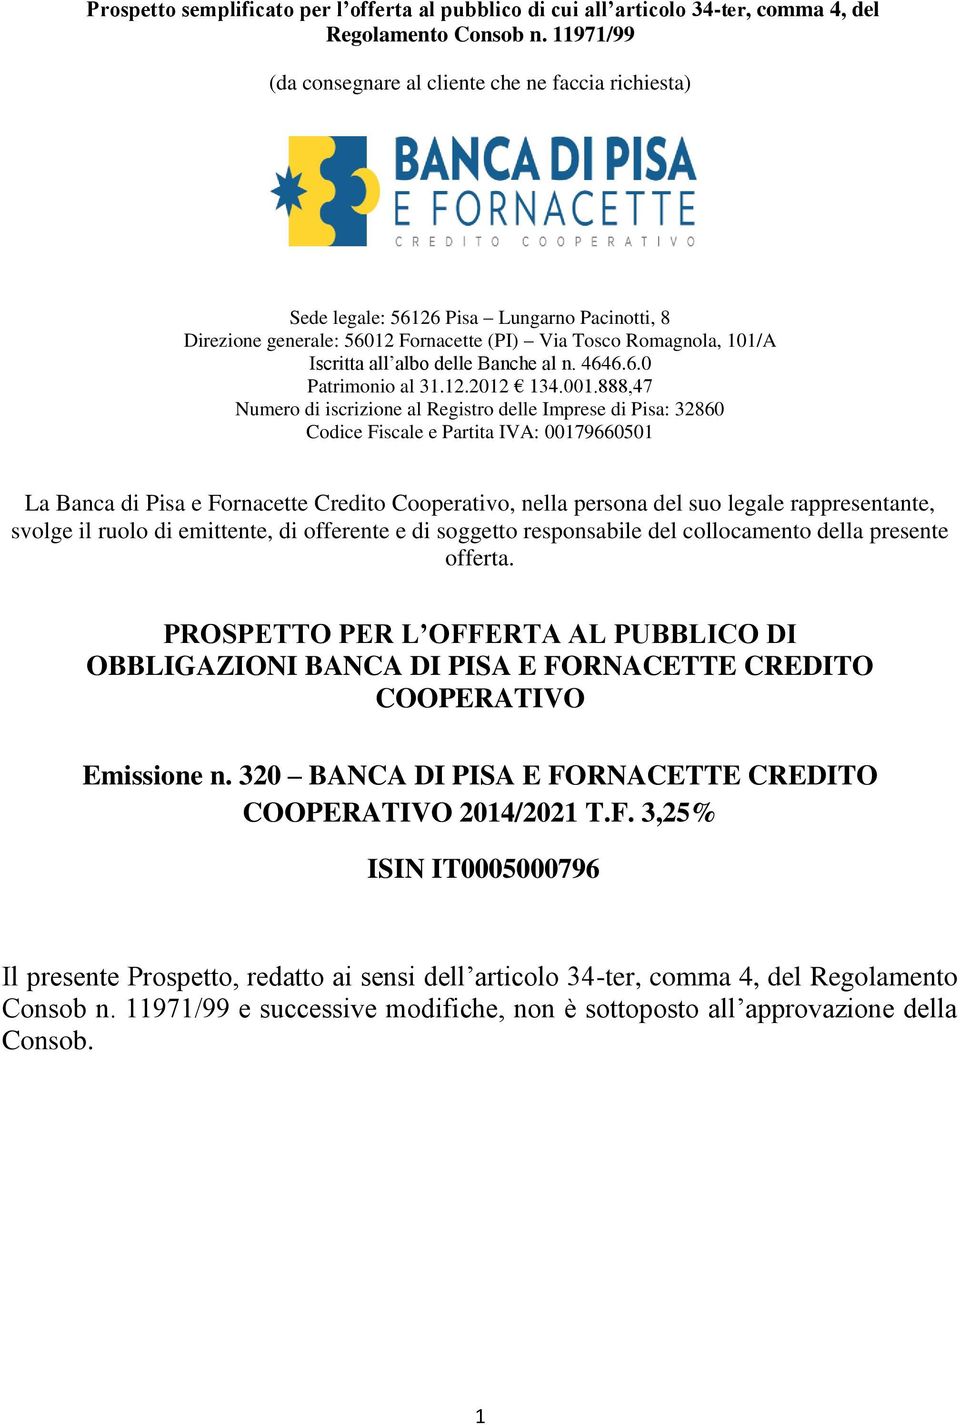 Banche al n. 4646.6.0 Patrimonio al 31.12.2012 134.001.